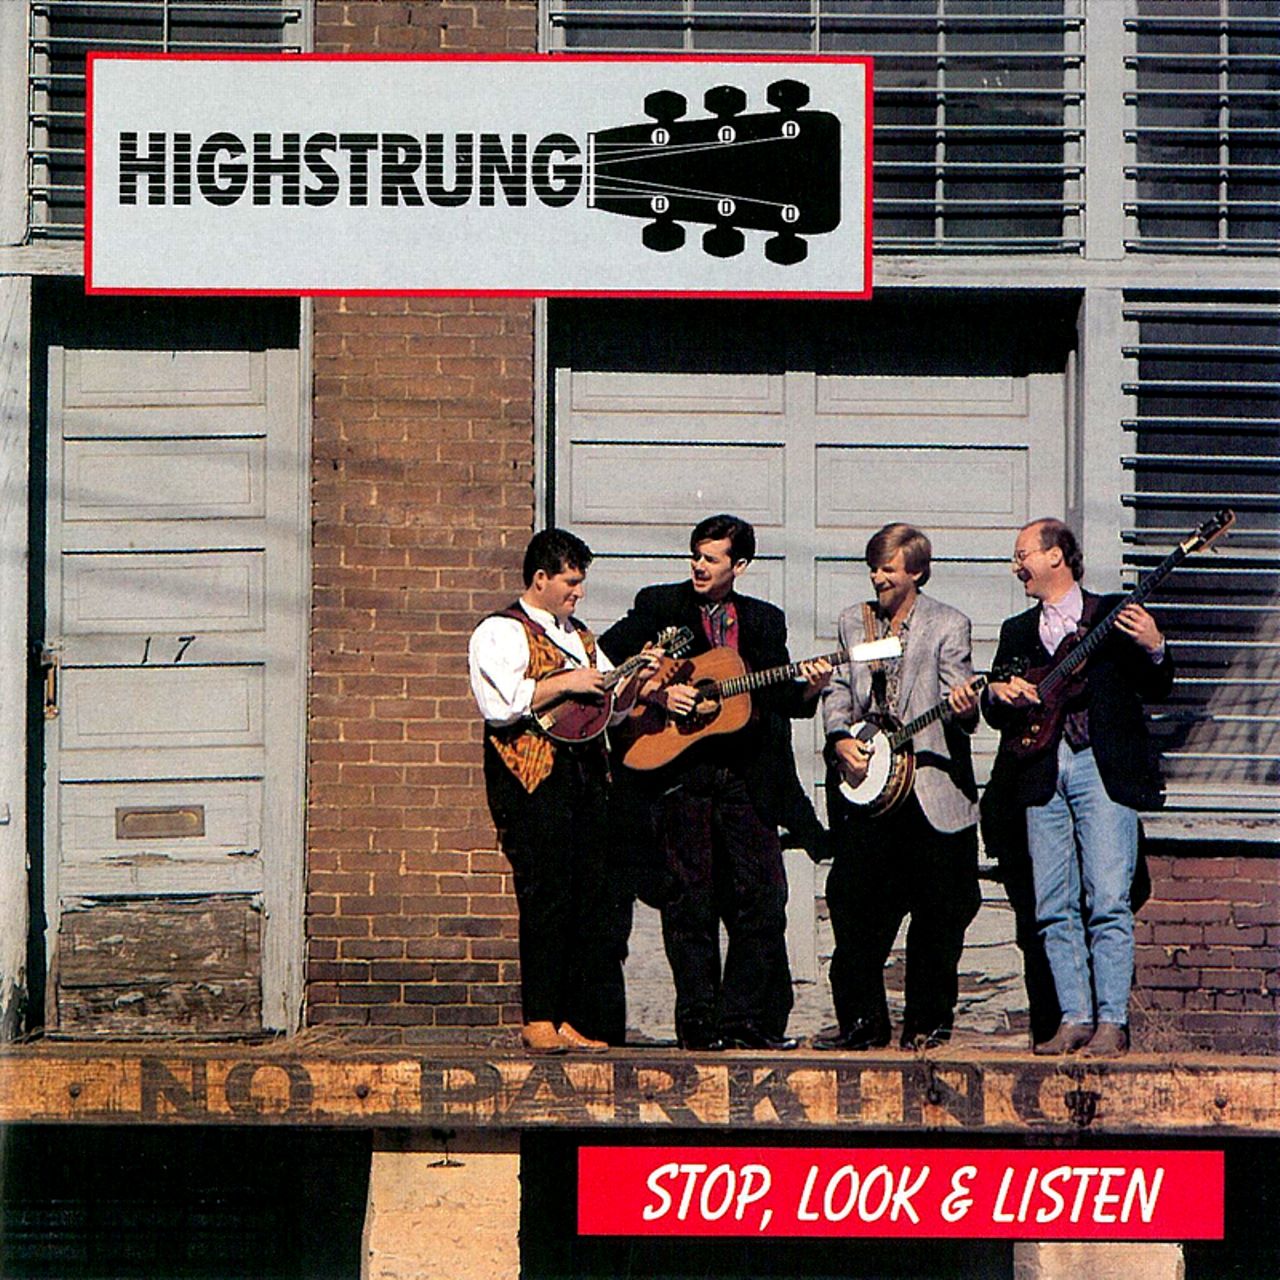 Highstrung - Stop, Look & Listen cover album